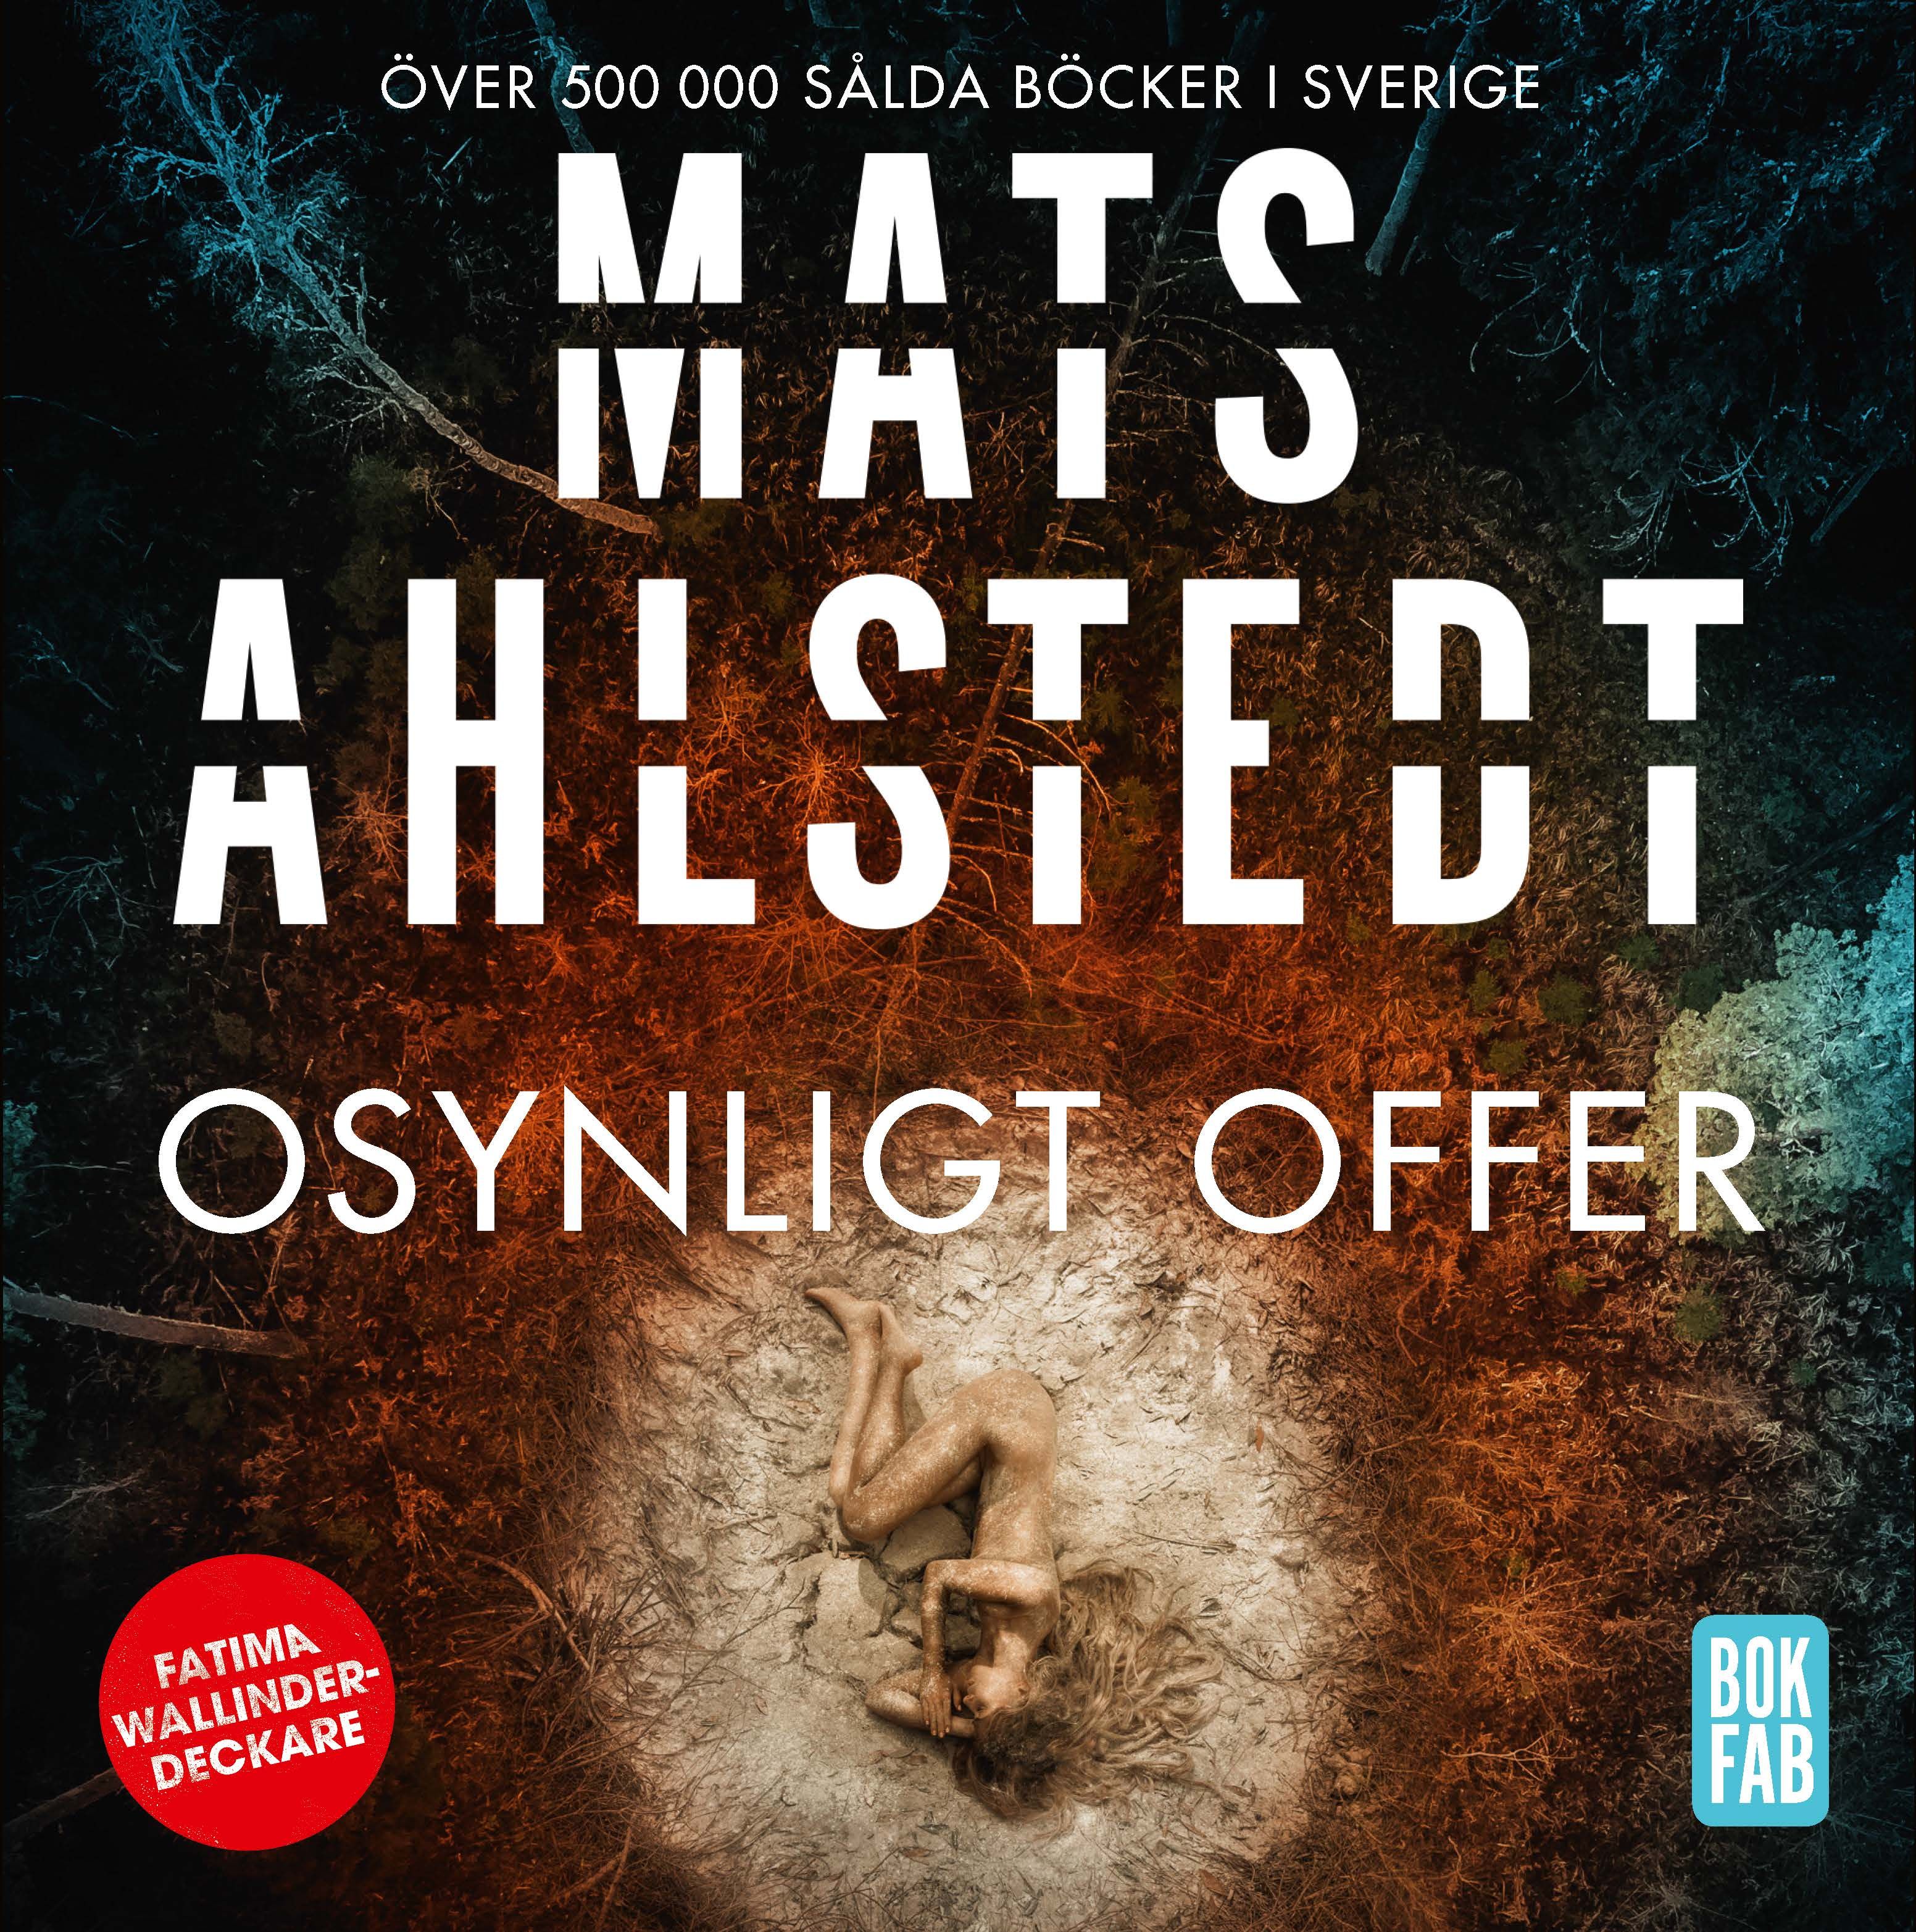 Osynligt offer, lydbog af Mats Ahlstedt